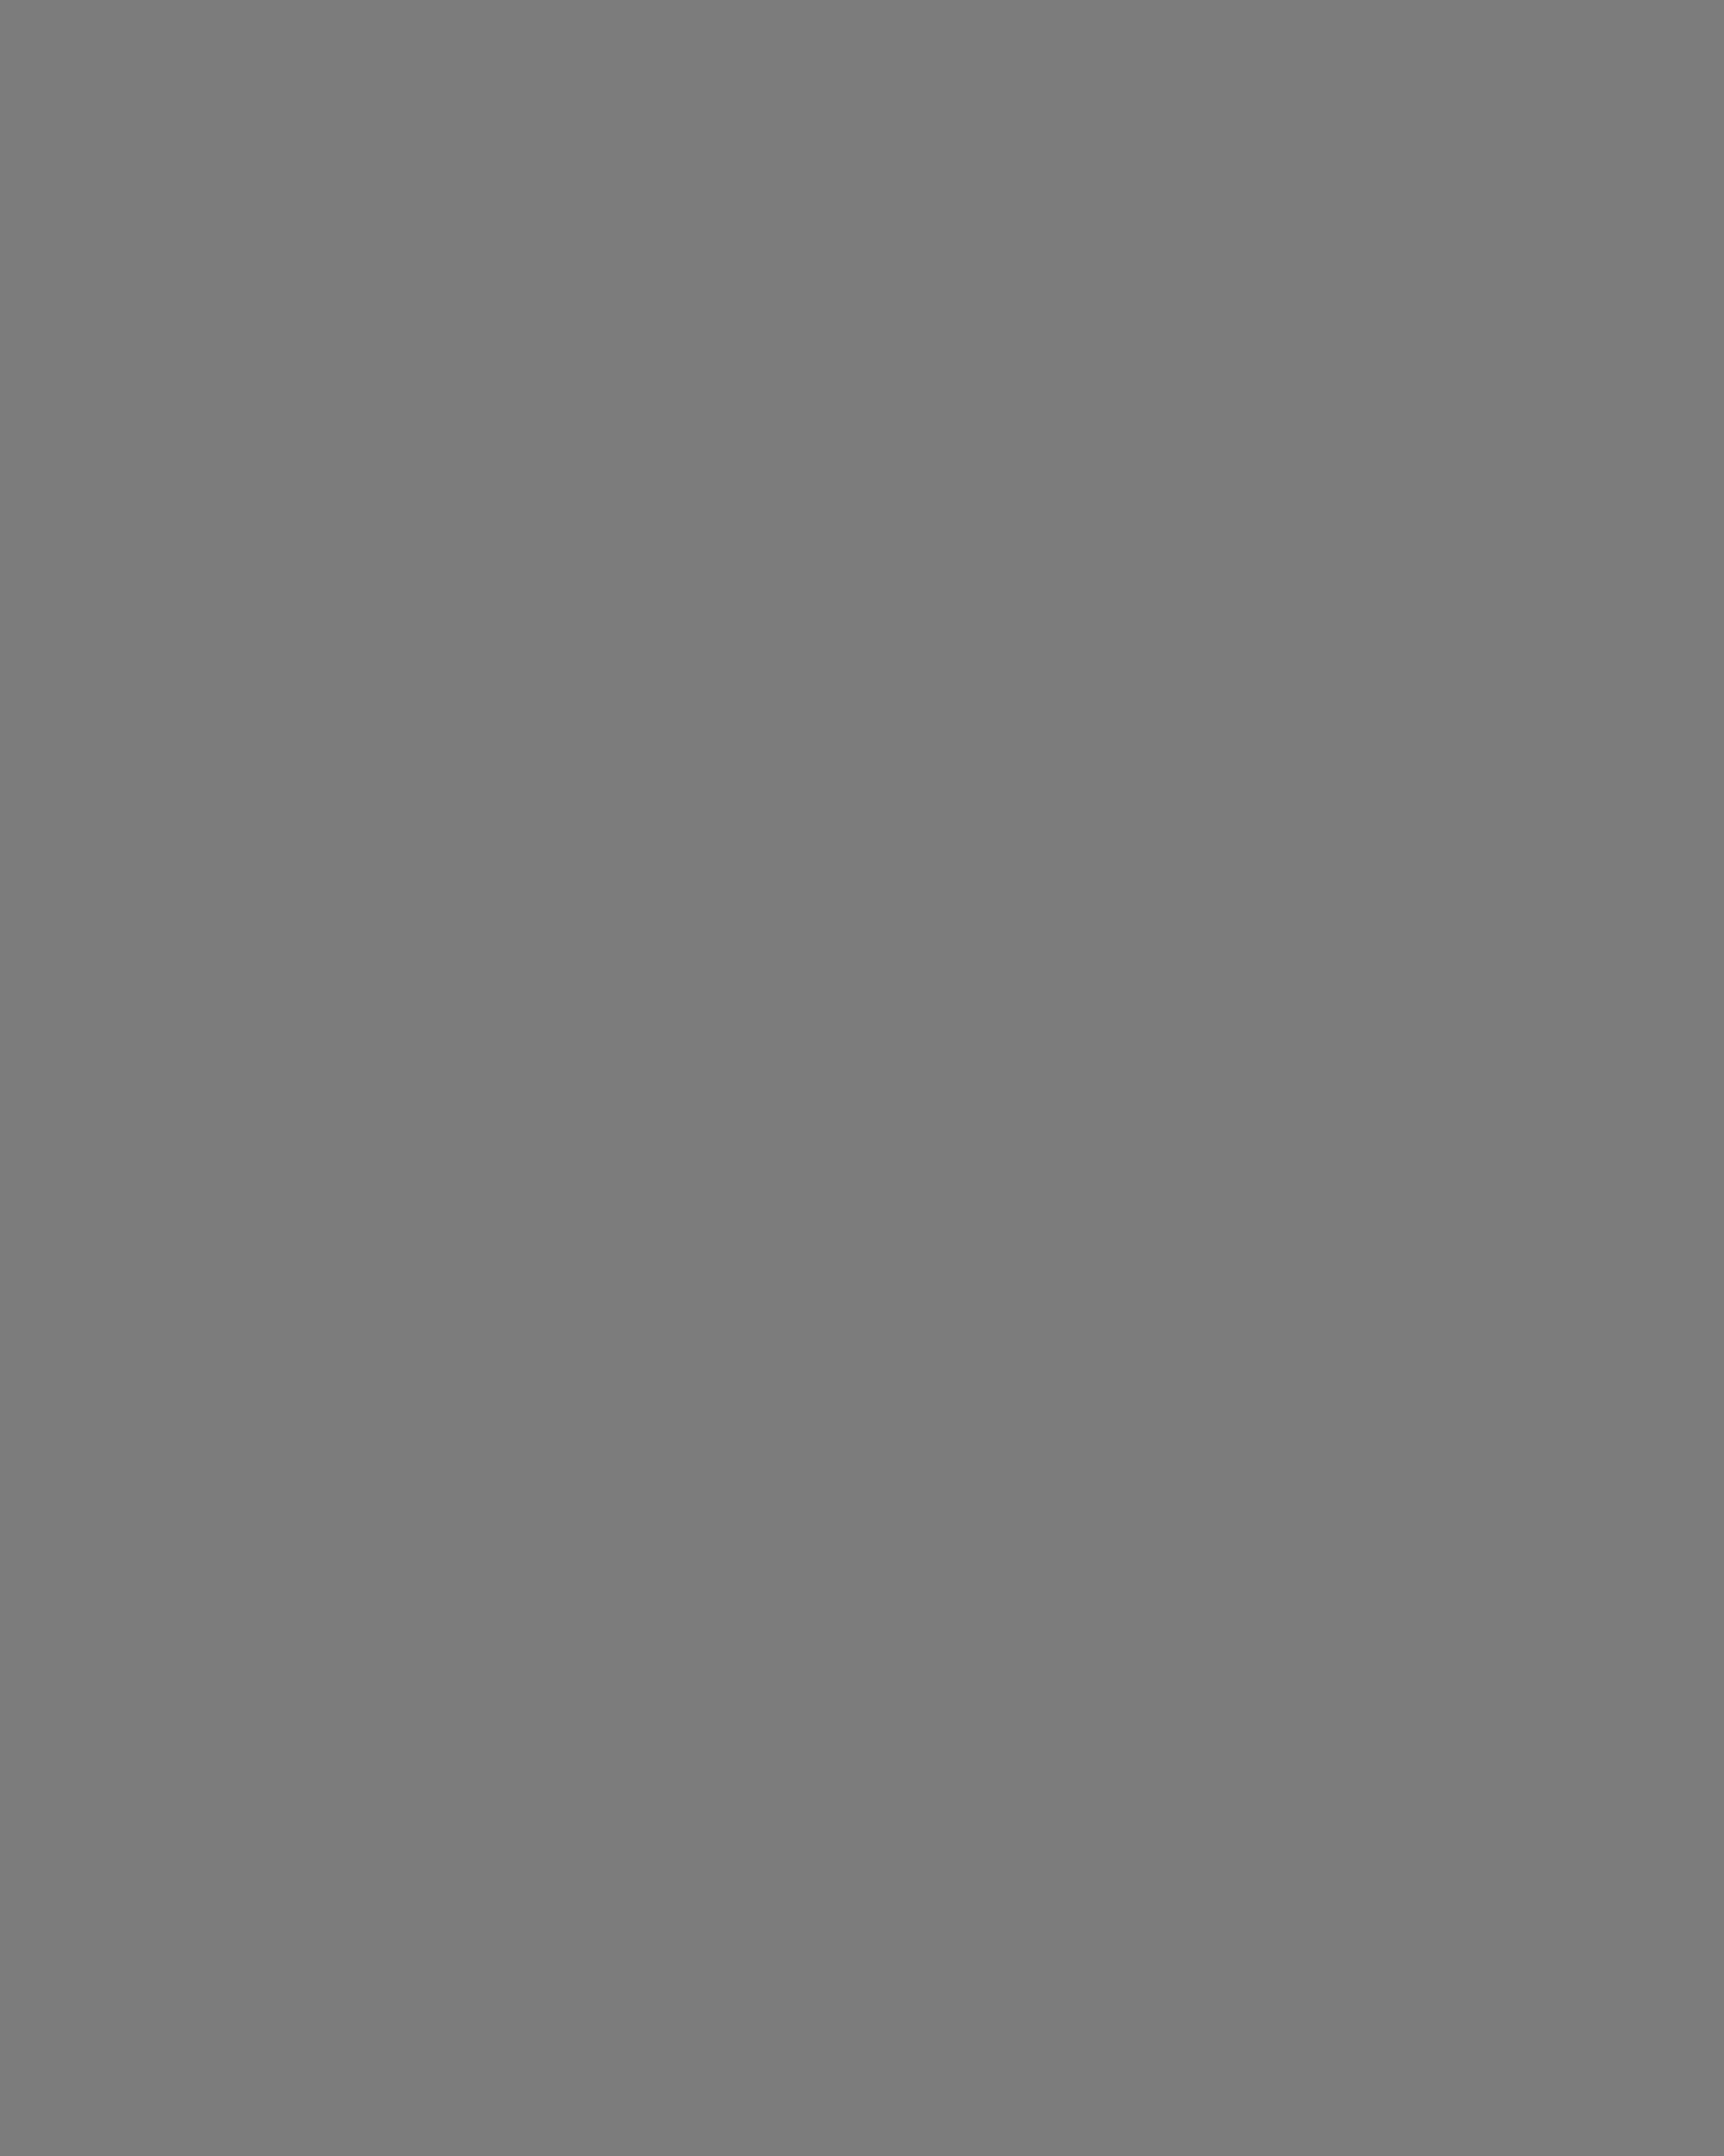 Поэт-песенник Михаил Пляцковский с юными зрителями на XIII Московском Международном кинофестивале. Москва, 1983 год. Фотография: Александр Шогин / Фотохроника ТАСС